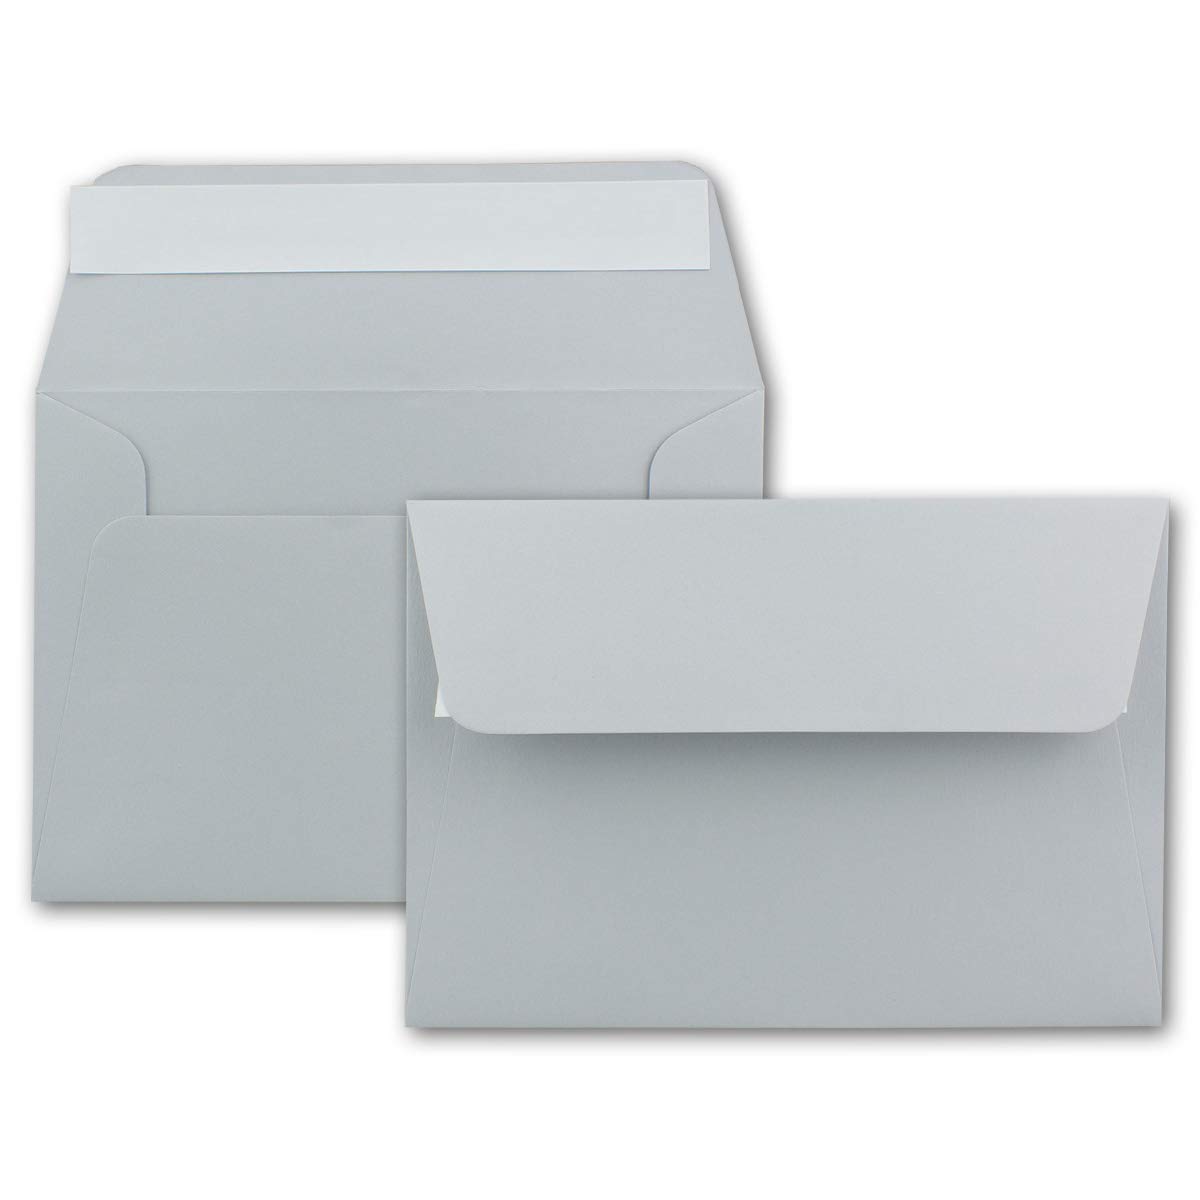 250x Brief-Umschläge B6 - Hellgrau - 12,5 x 17,5 cm - Haftklebung 120 g/m² - breite edle Verschluss-Lasche - hochwertige Einladungs-Umschläge